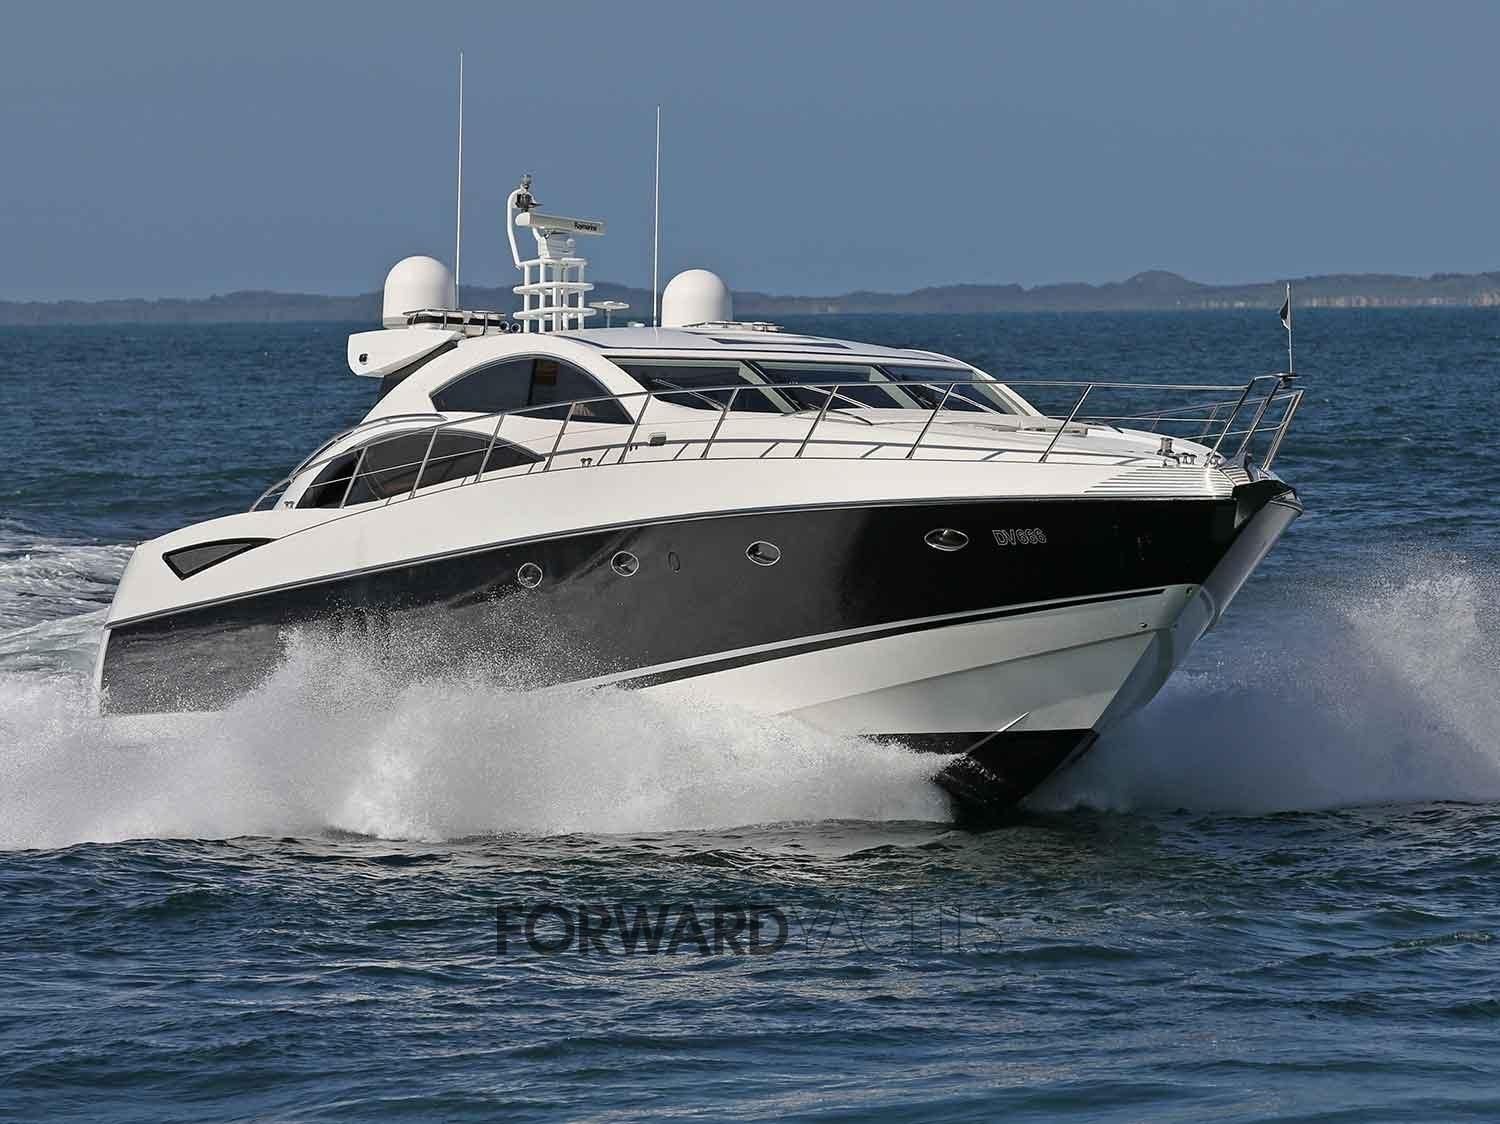 2007 Sunseeker Predator 72 Motor Yacht for sale - YachtWorld